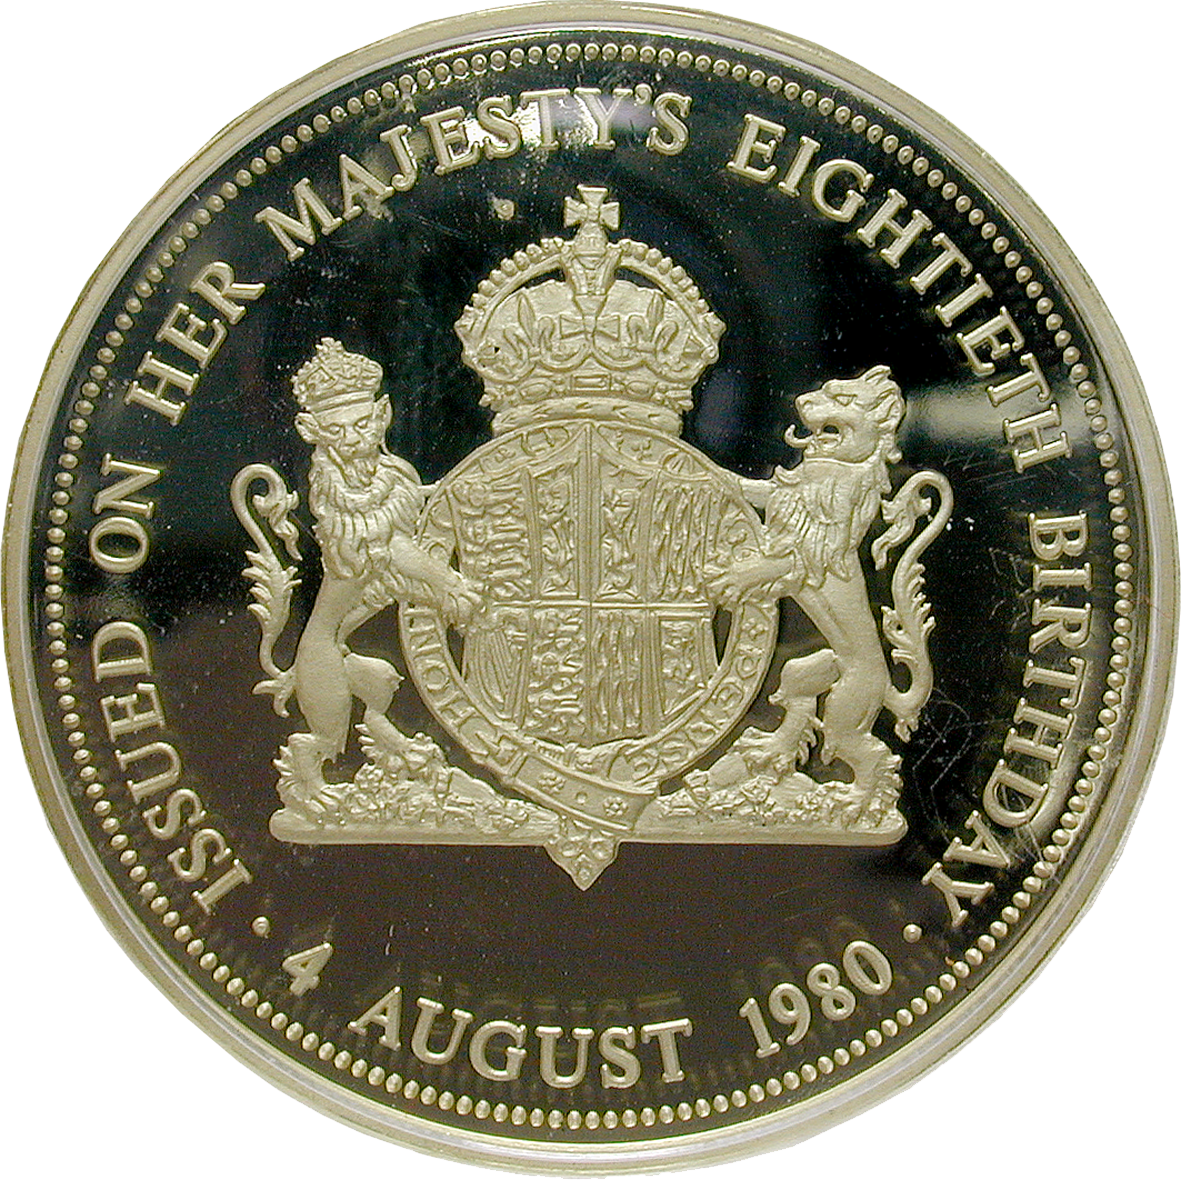 Vereinigtes Königreich Grossbritannien, Medaille 1980 (reverse)